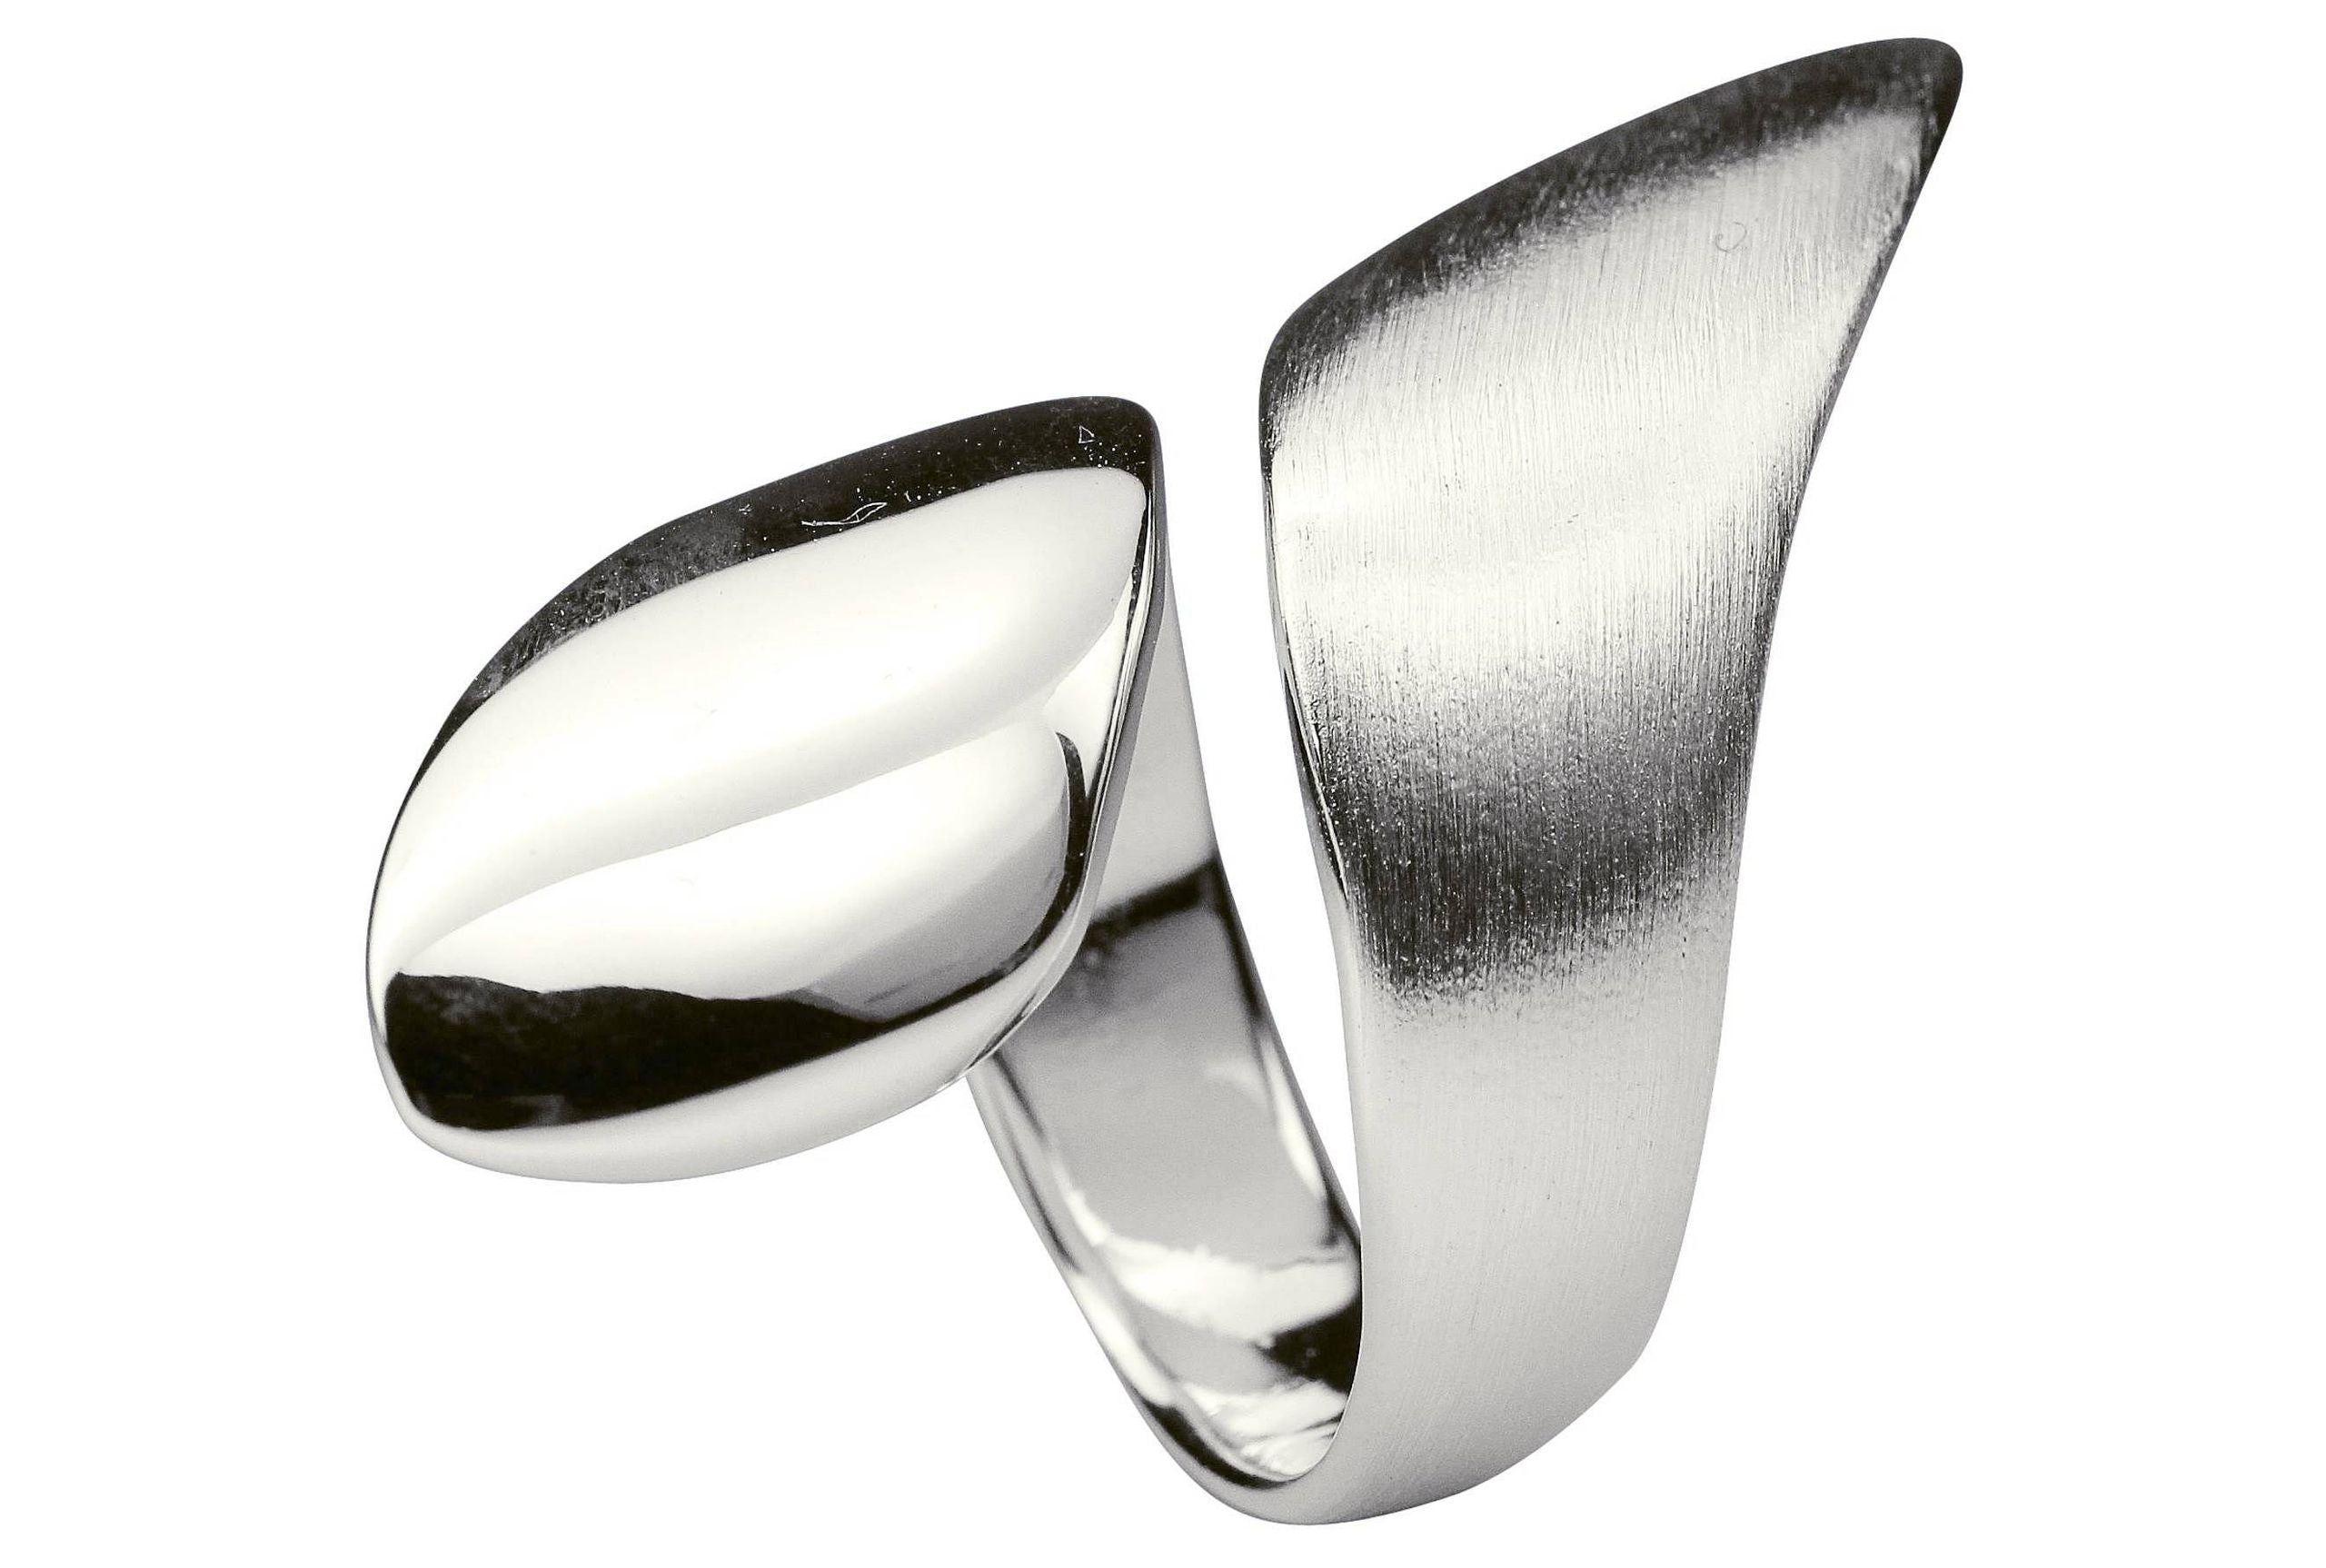 Ein offen gearbeiteter Damenring aus Silber mit teils matter, teils glänzender Oberfläche, der mit seiner Form eine Umarmung um den Finger andeutet.